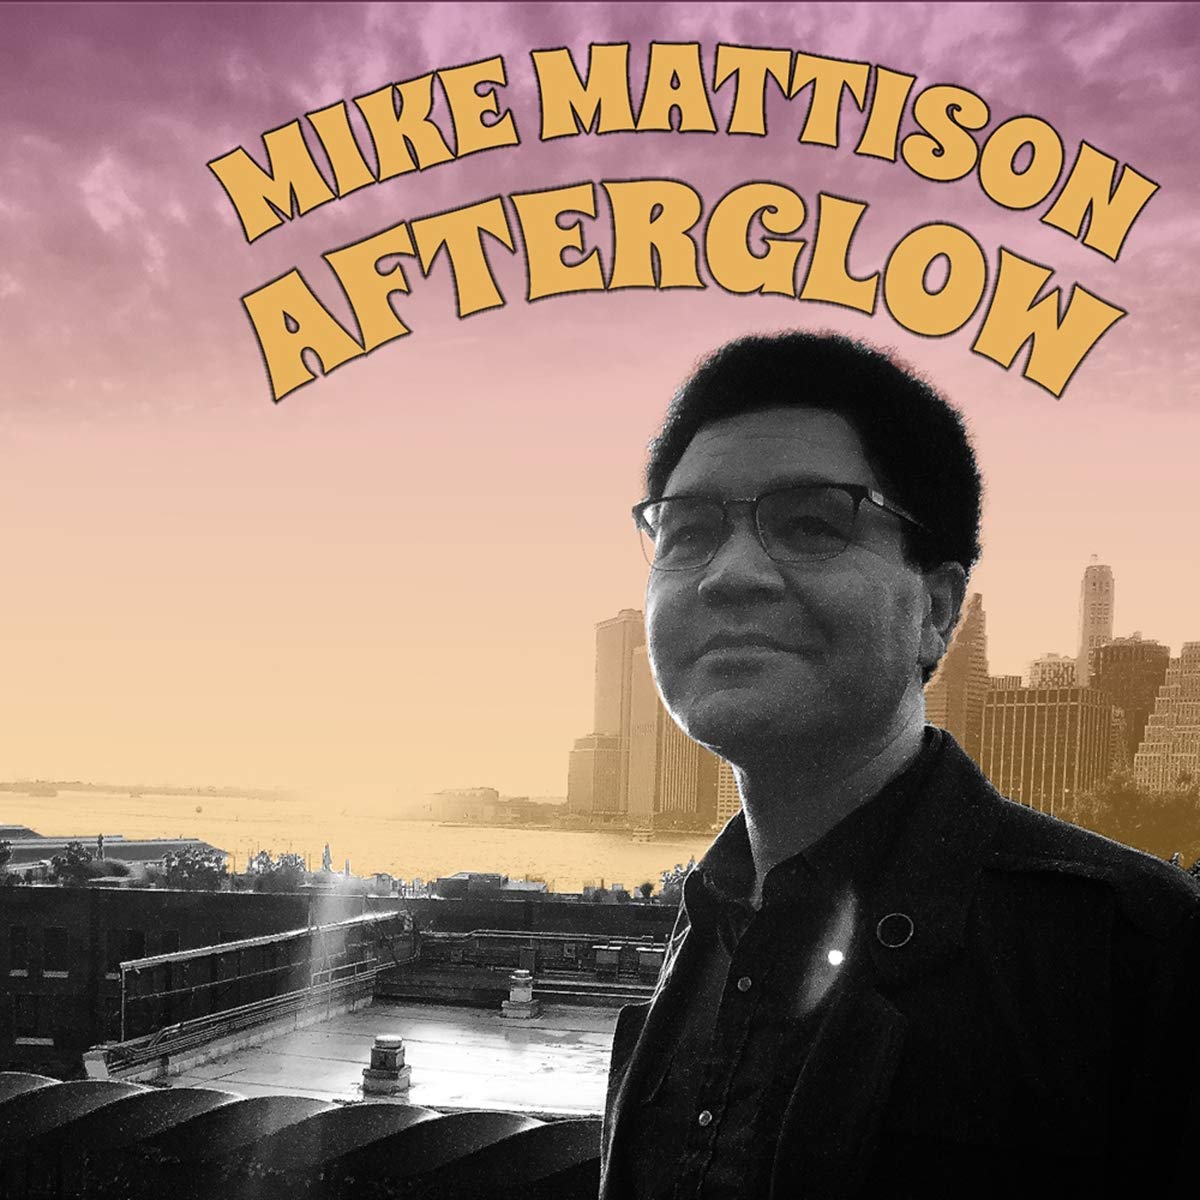 Mike Mattison